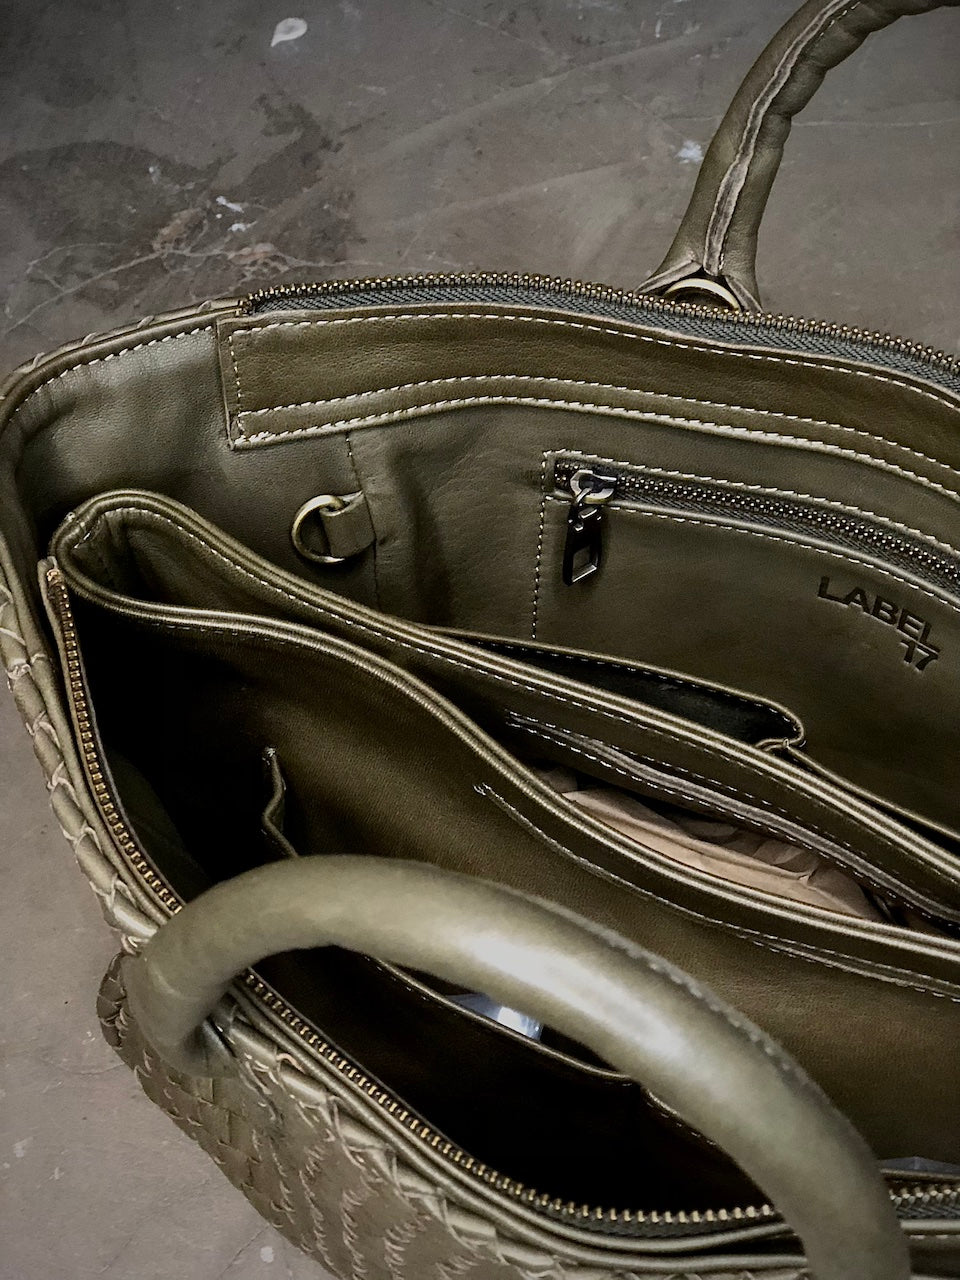 Der Bag Organizer von LABEL17 ist aus geschmeidigem Nappaleder gefertigt und sorgt auf leichte und stilvolle Art für Ordnung und Übersicht in grossen Taschen. Mit Integrierten Aussen- und Innenfächern und magnetischem Verschluss passt Sie perfekt in die Cabas Bags.